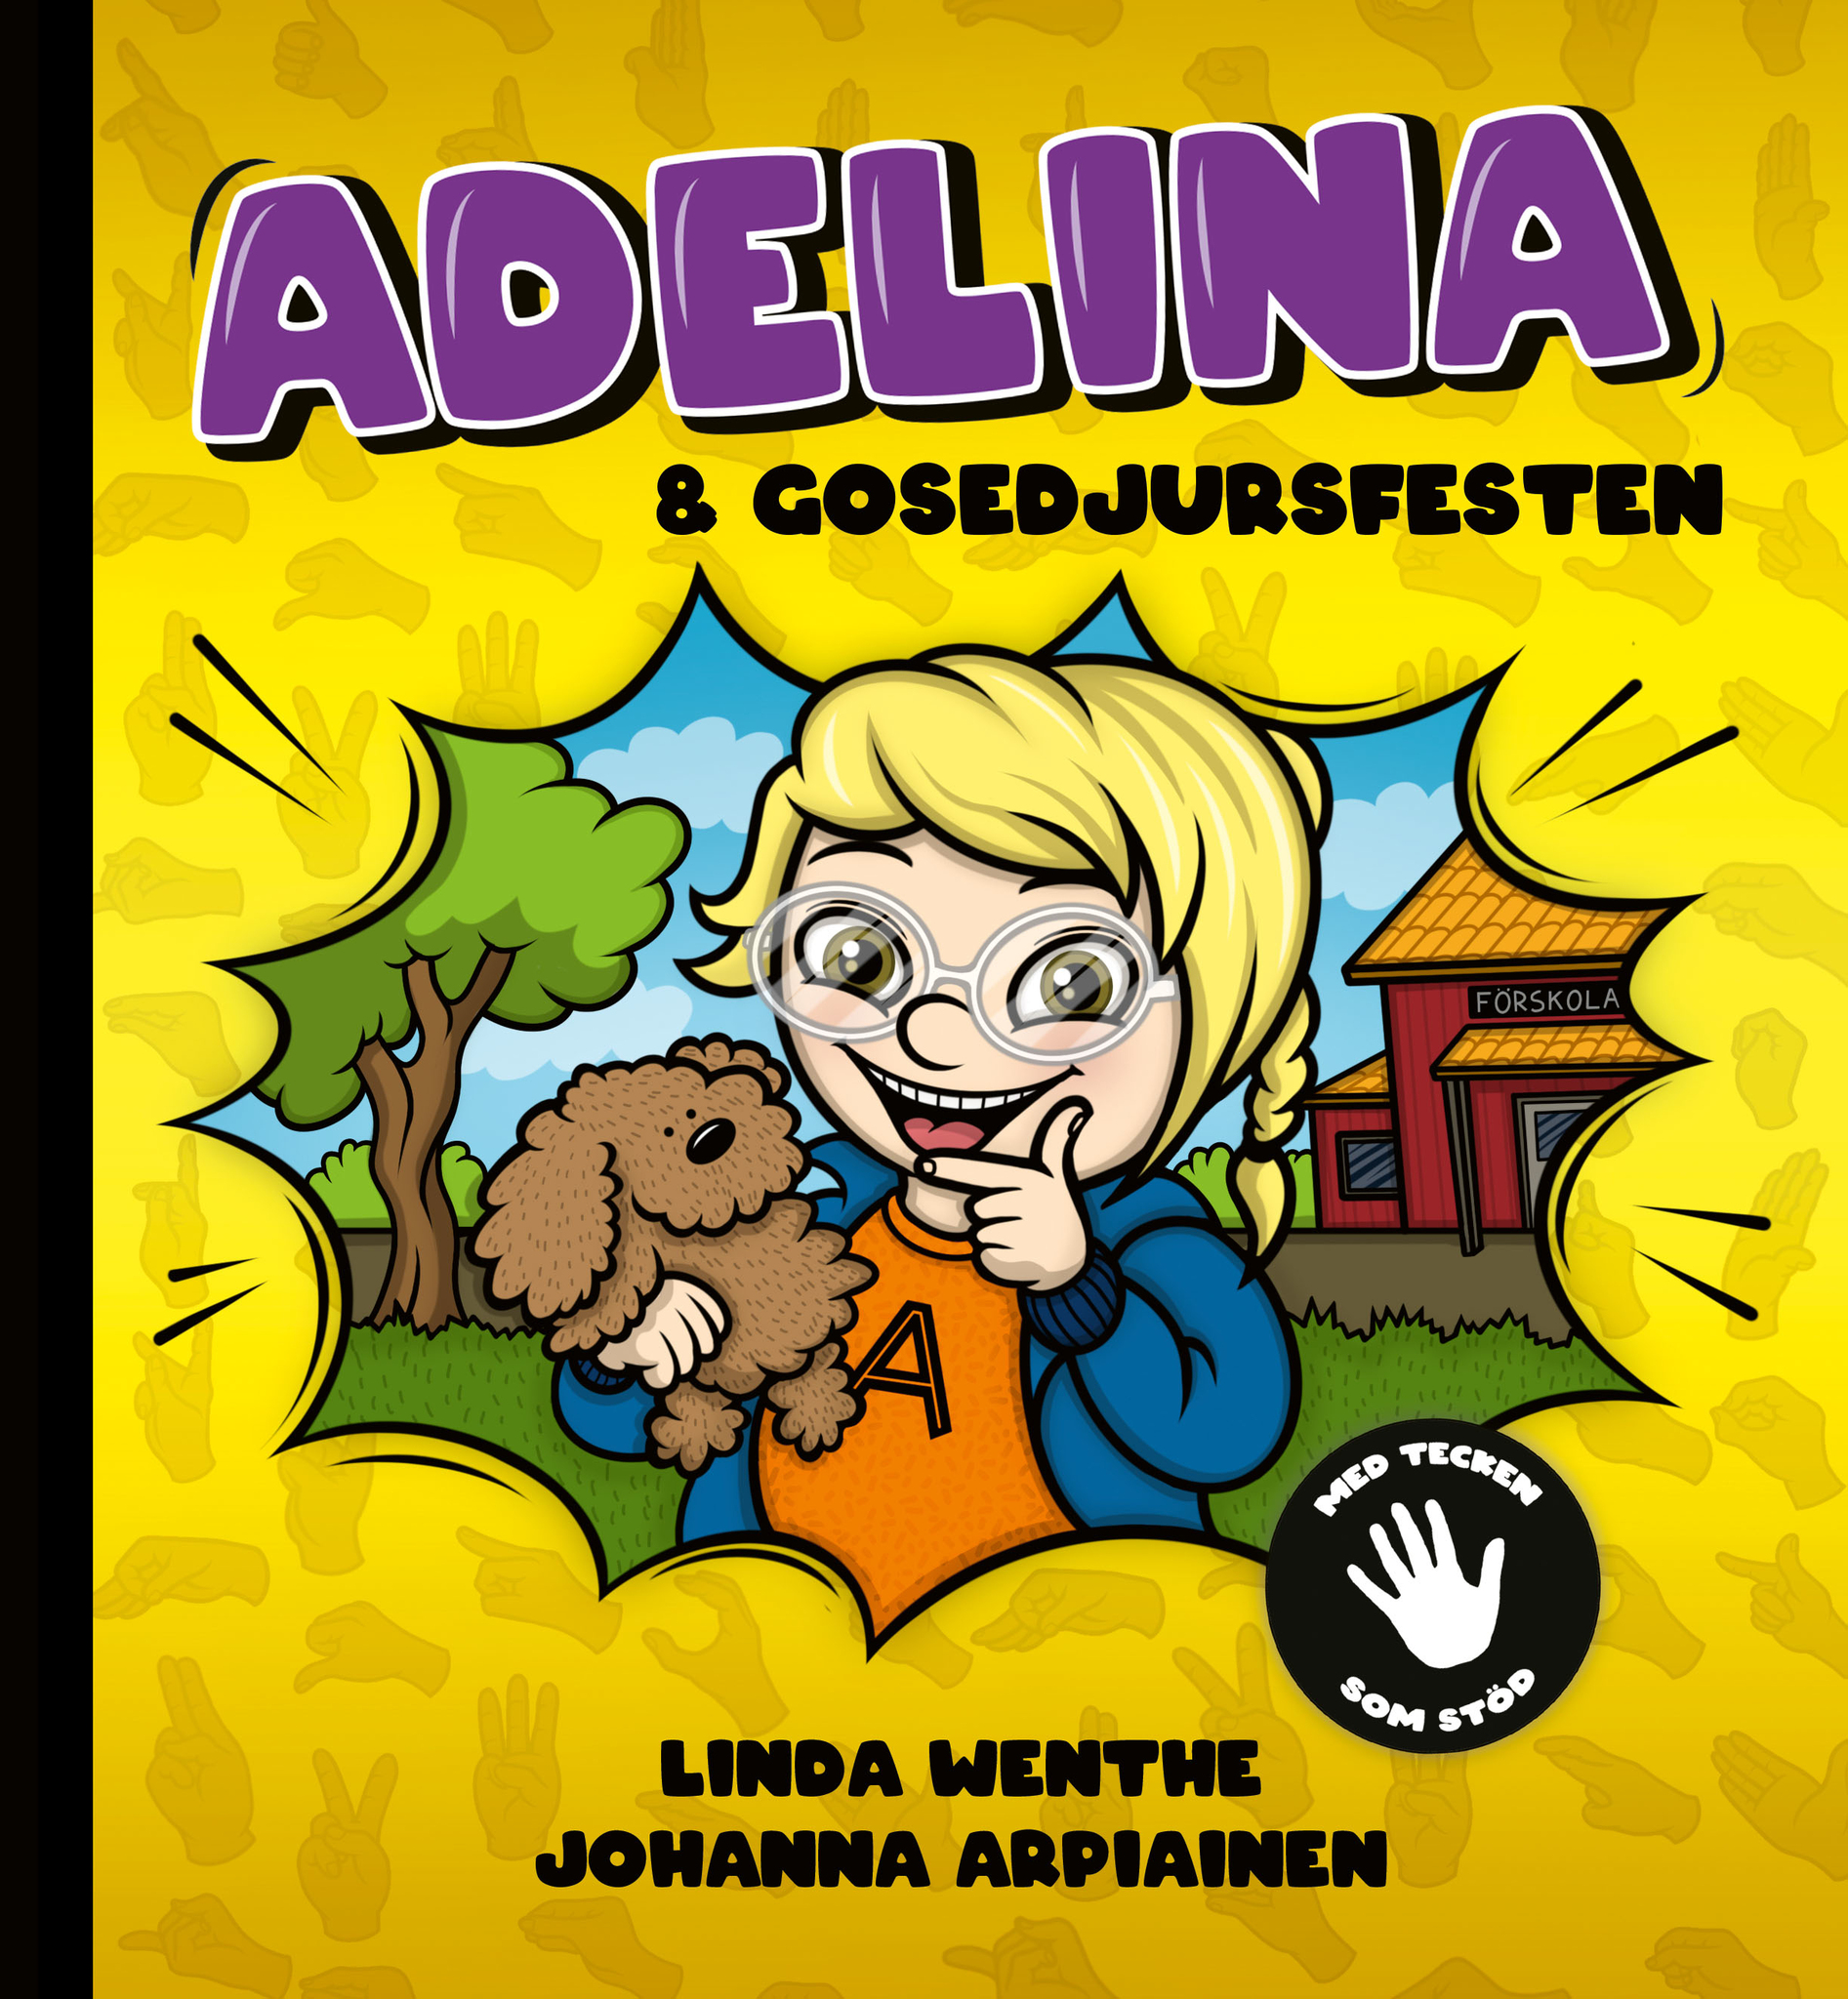 Adelina och gosedjursfesten Adelina är pirrig i magen för idag är det gosedjursfest på förskolan. Vilken nalle ska få följa med? På förskolan är alla glada men mitt i samlingen går brandlarmet och all